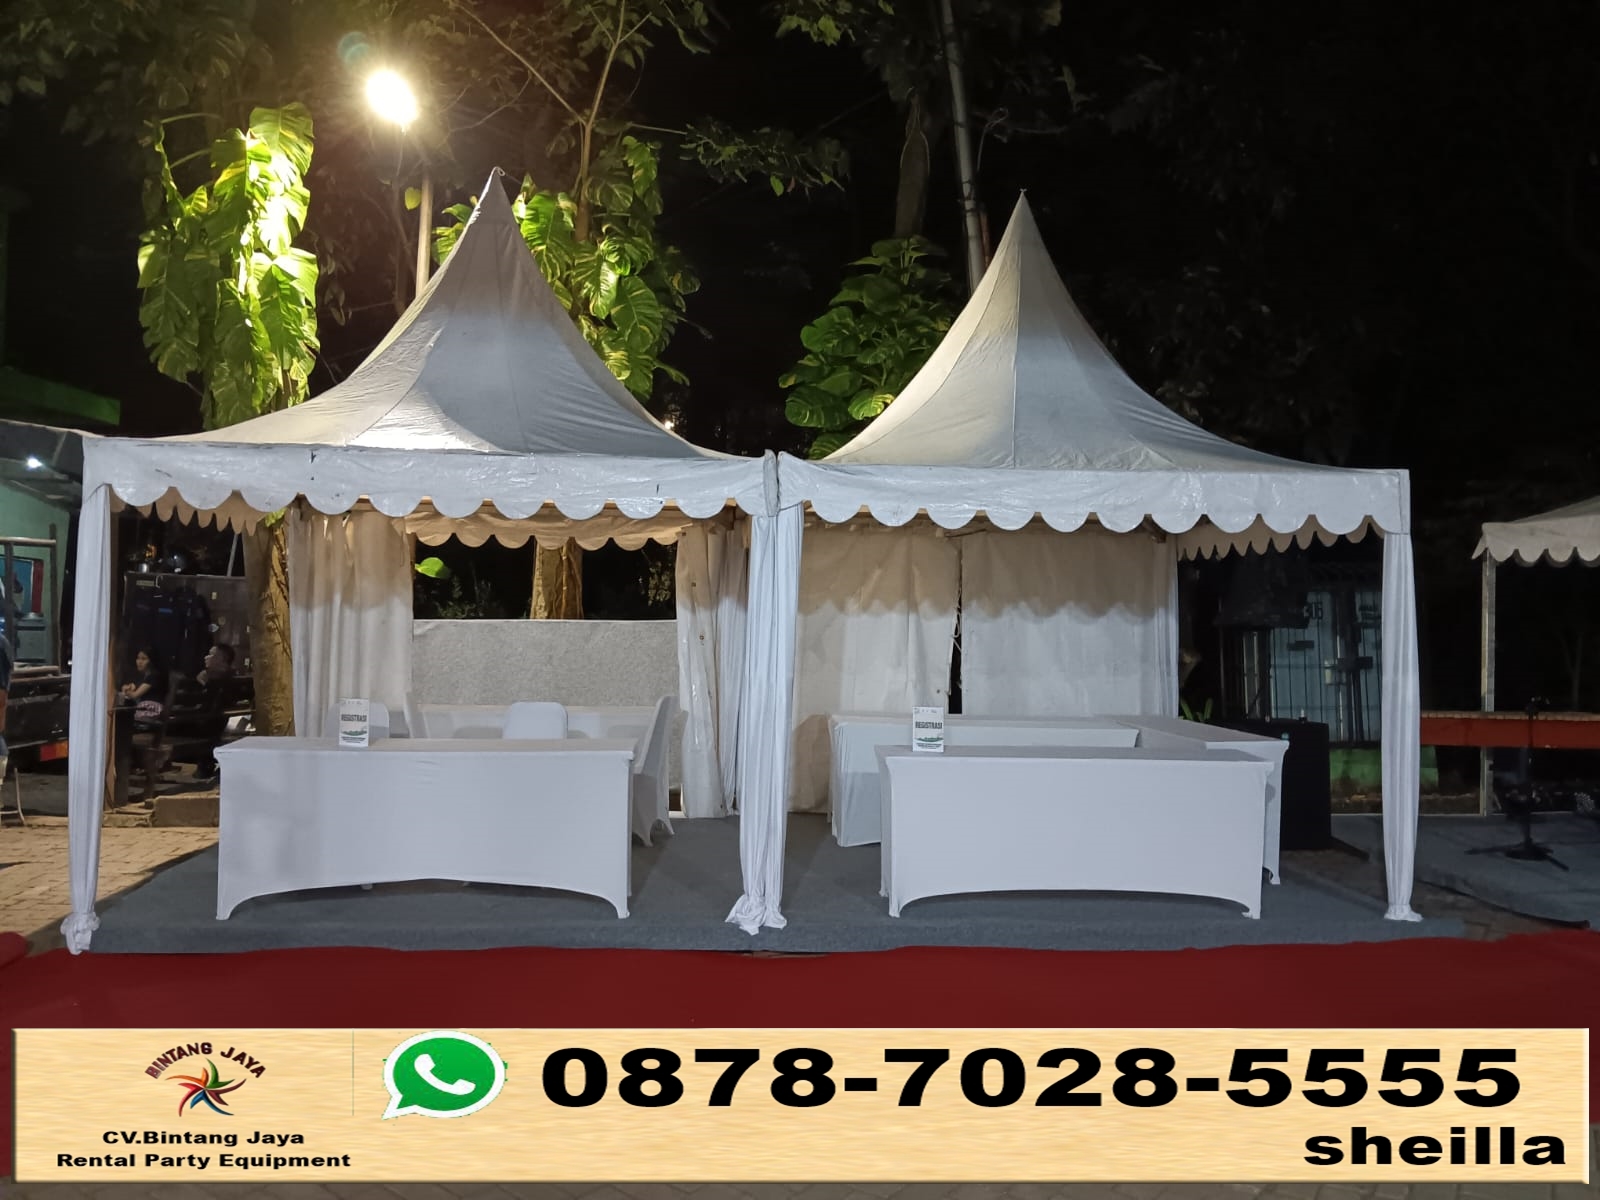 Pusat sewa tenda kerucut untuk event bazar UMKM Bekasi